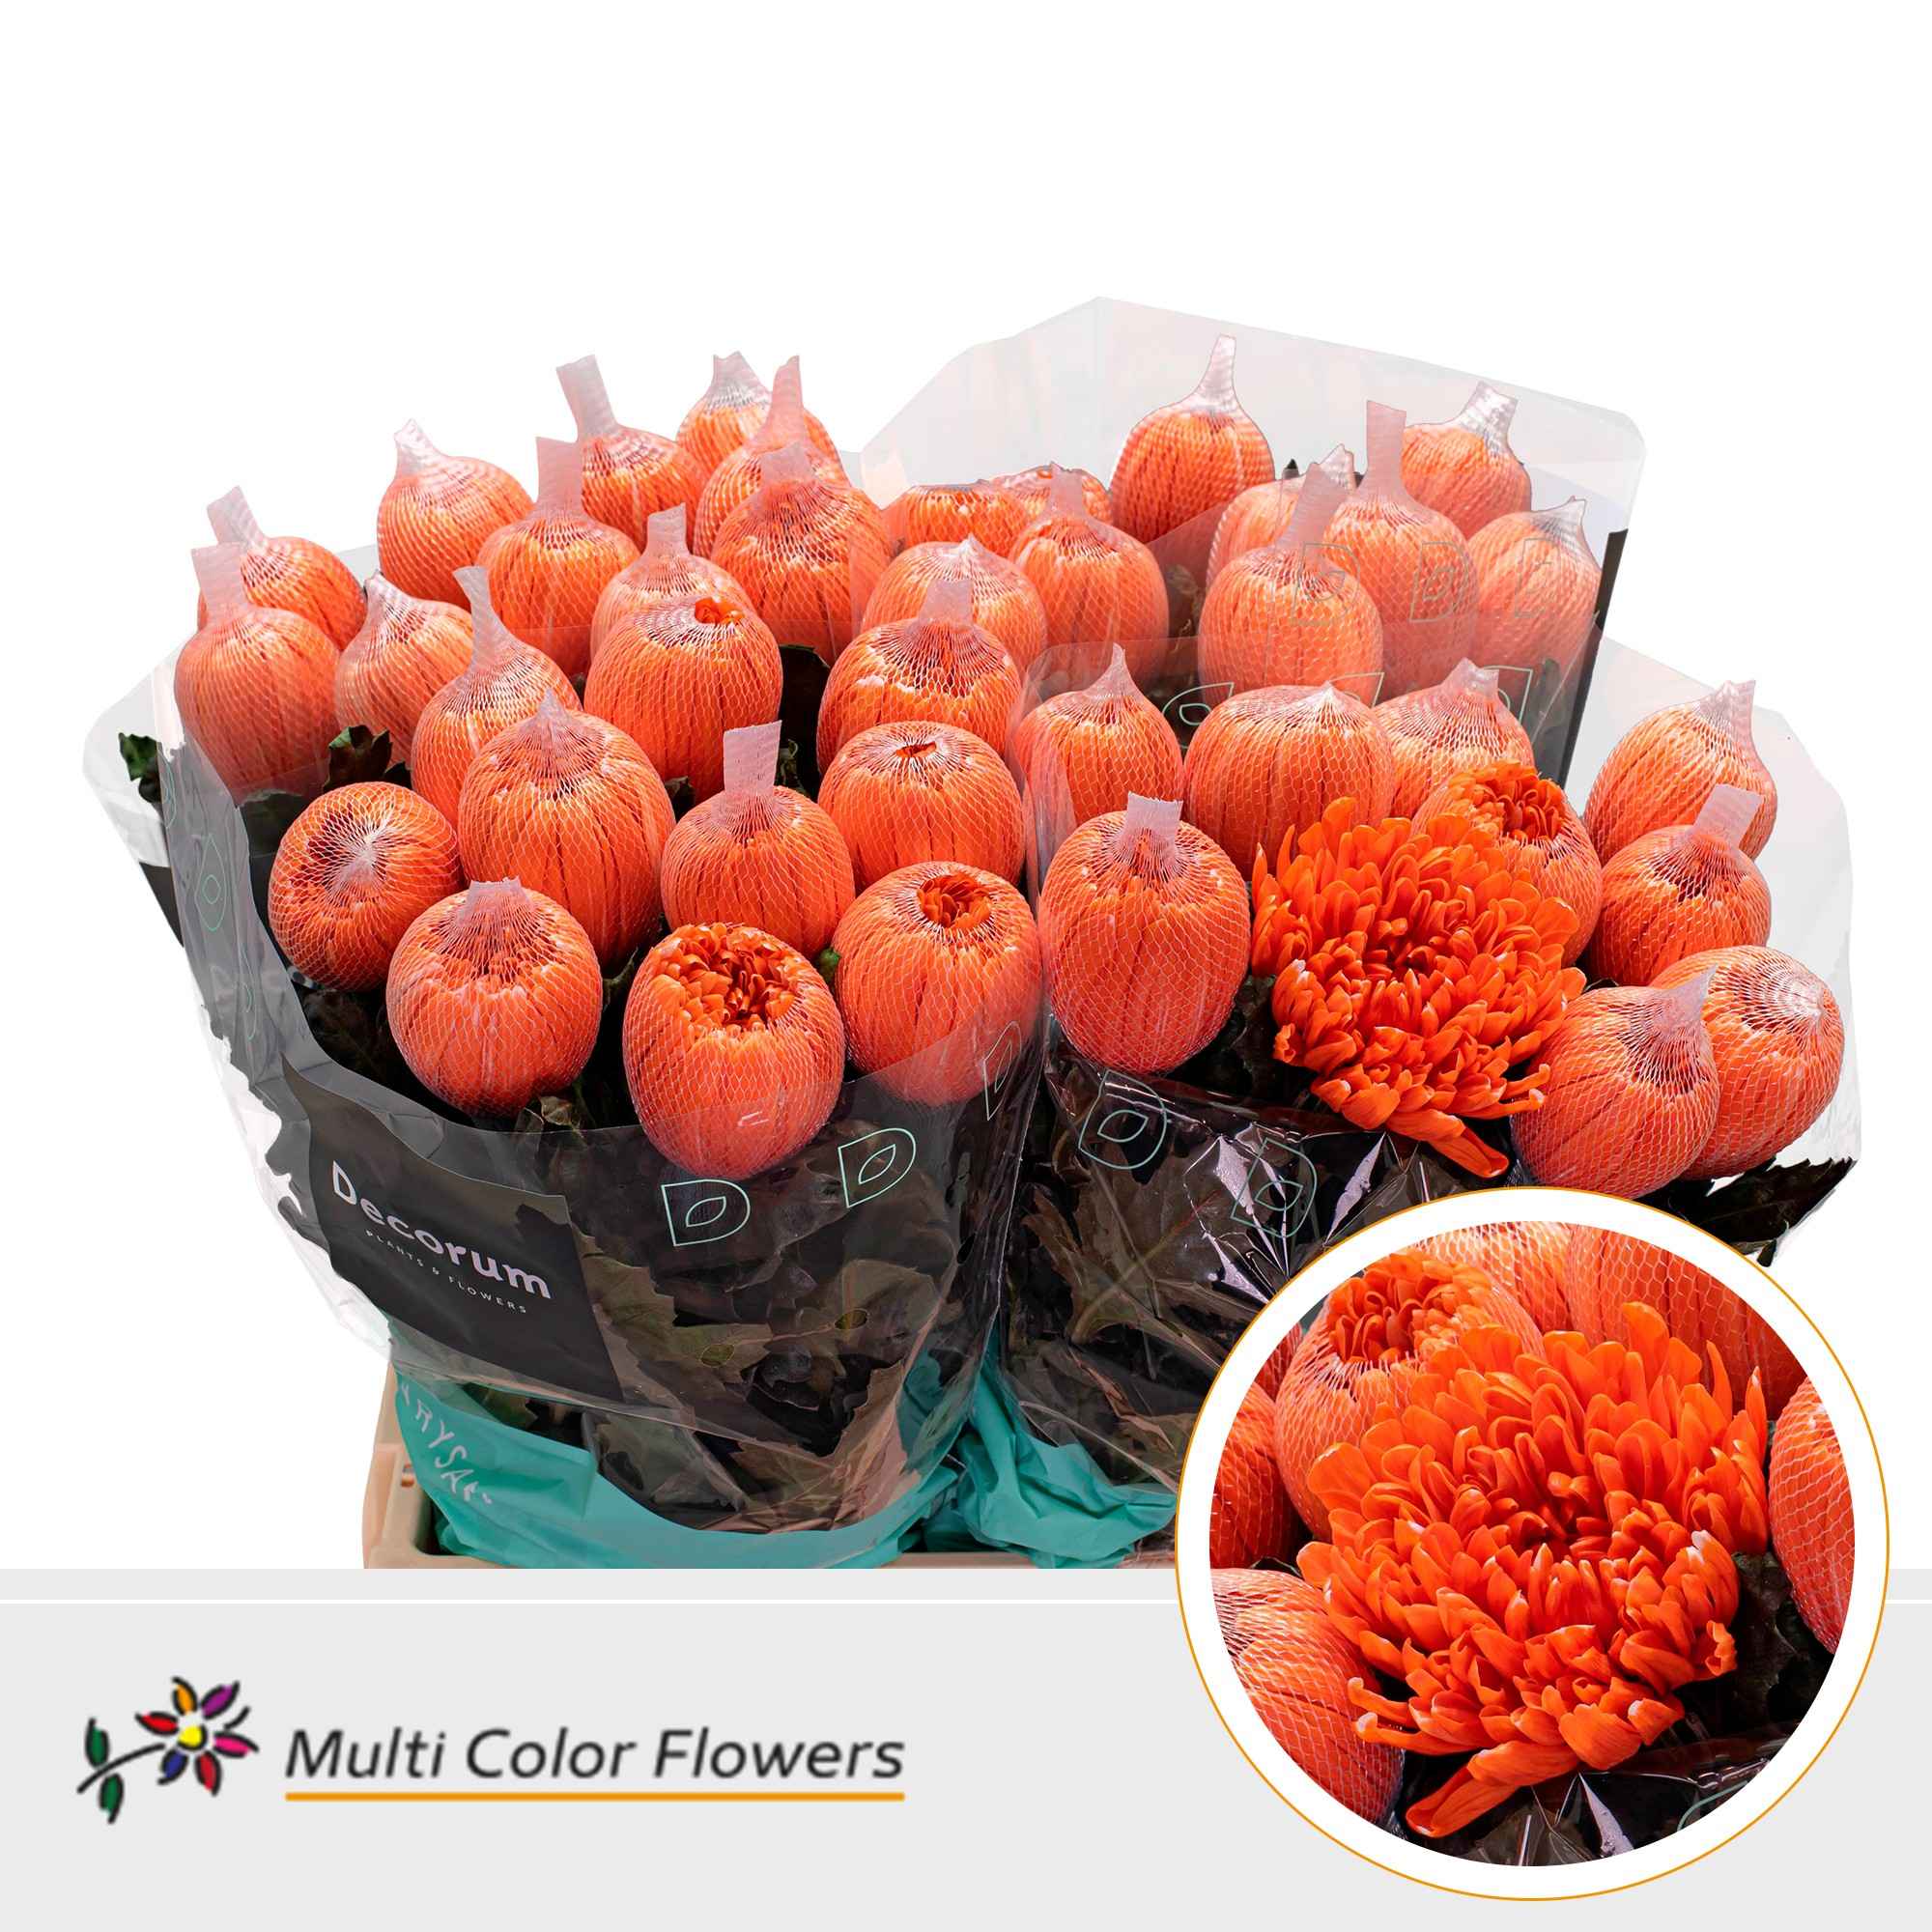 Срезанные цветы оптом Chrys bl paint antonov orange от 40шт из Голландии с доставкой по России